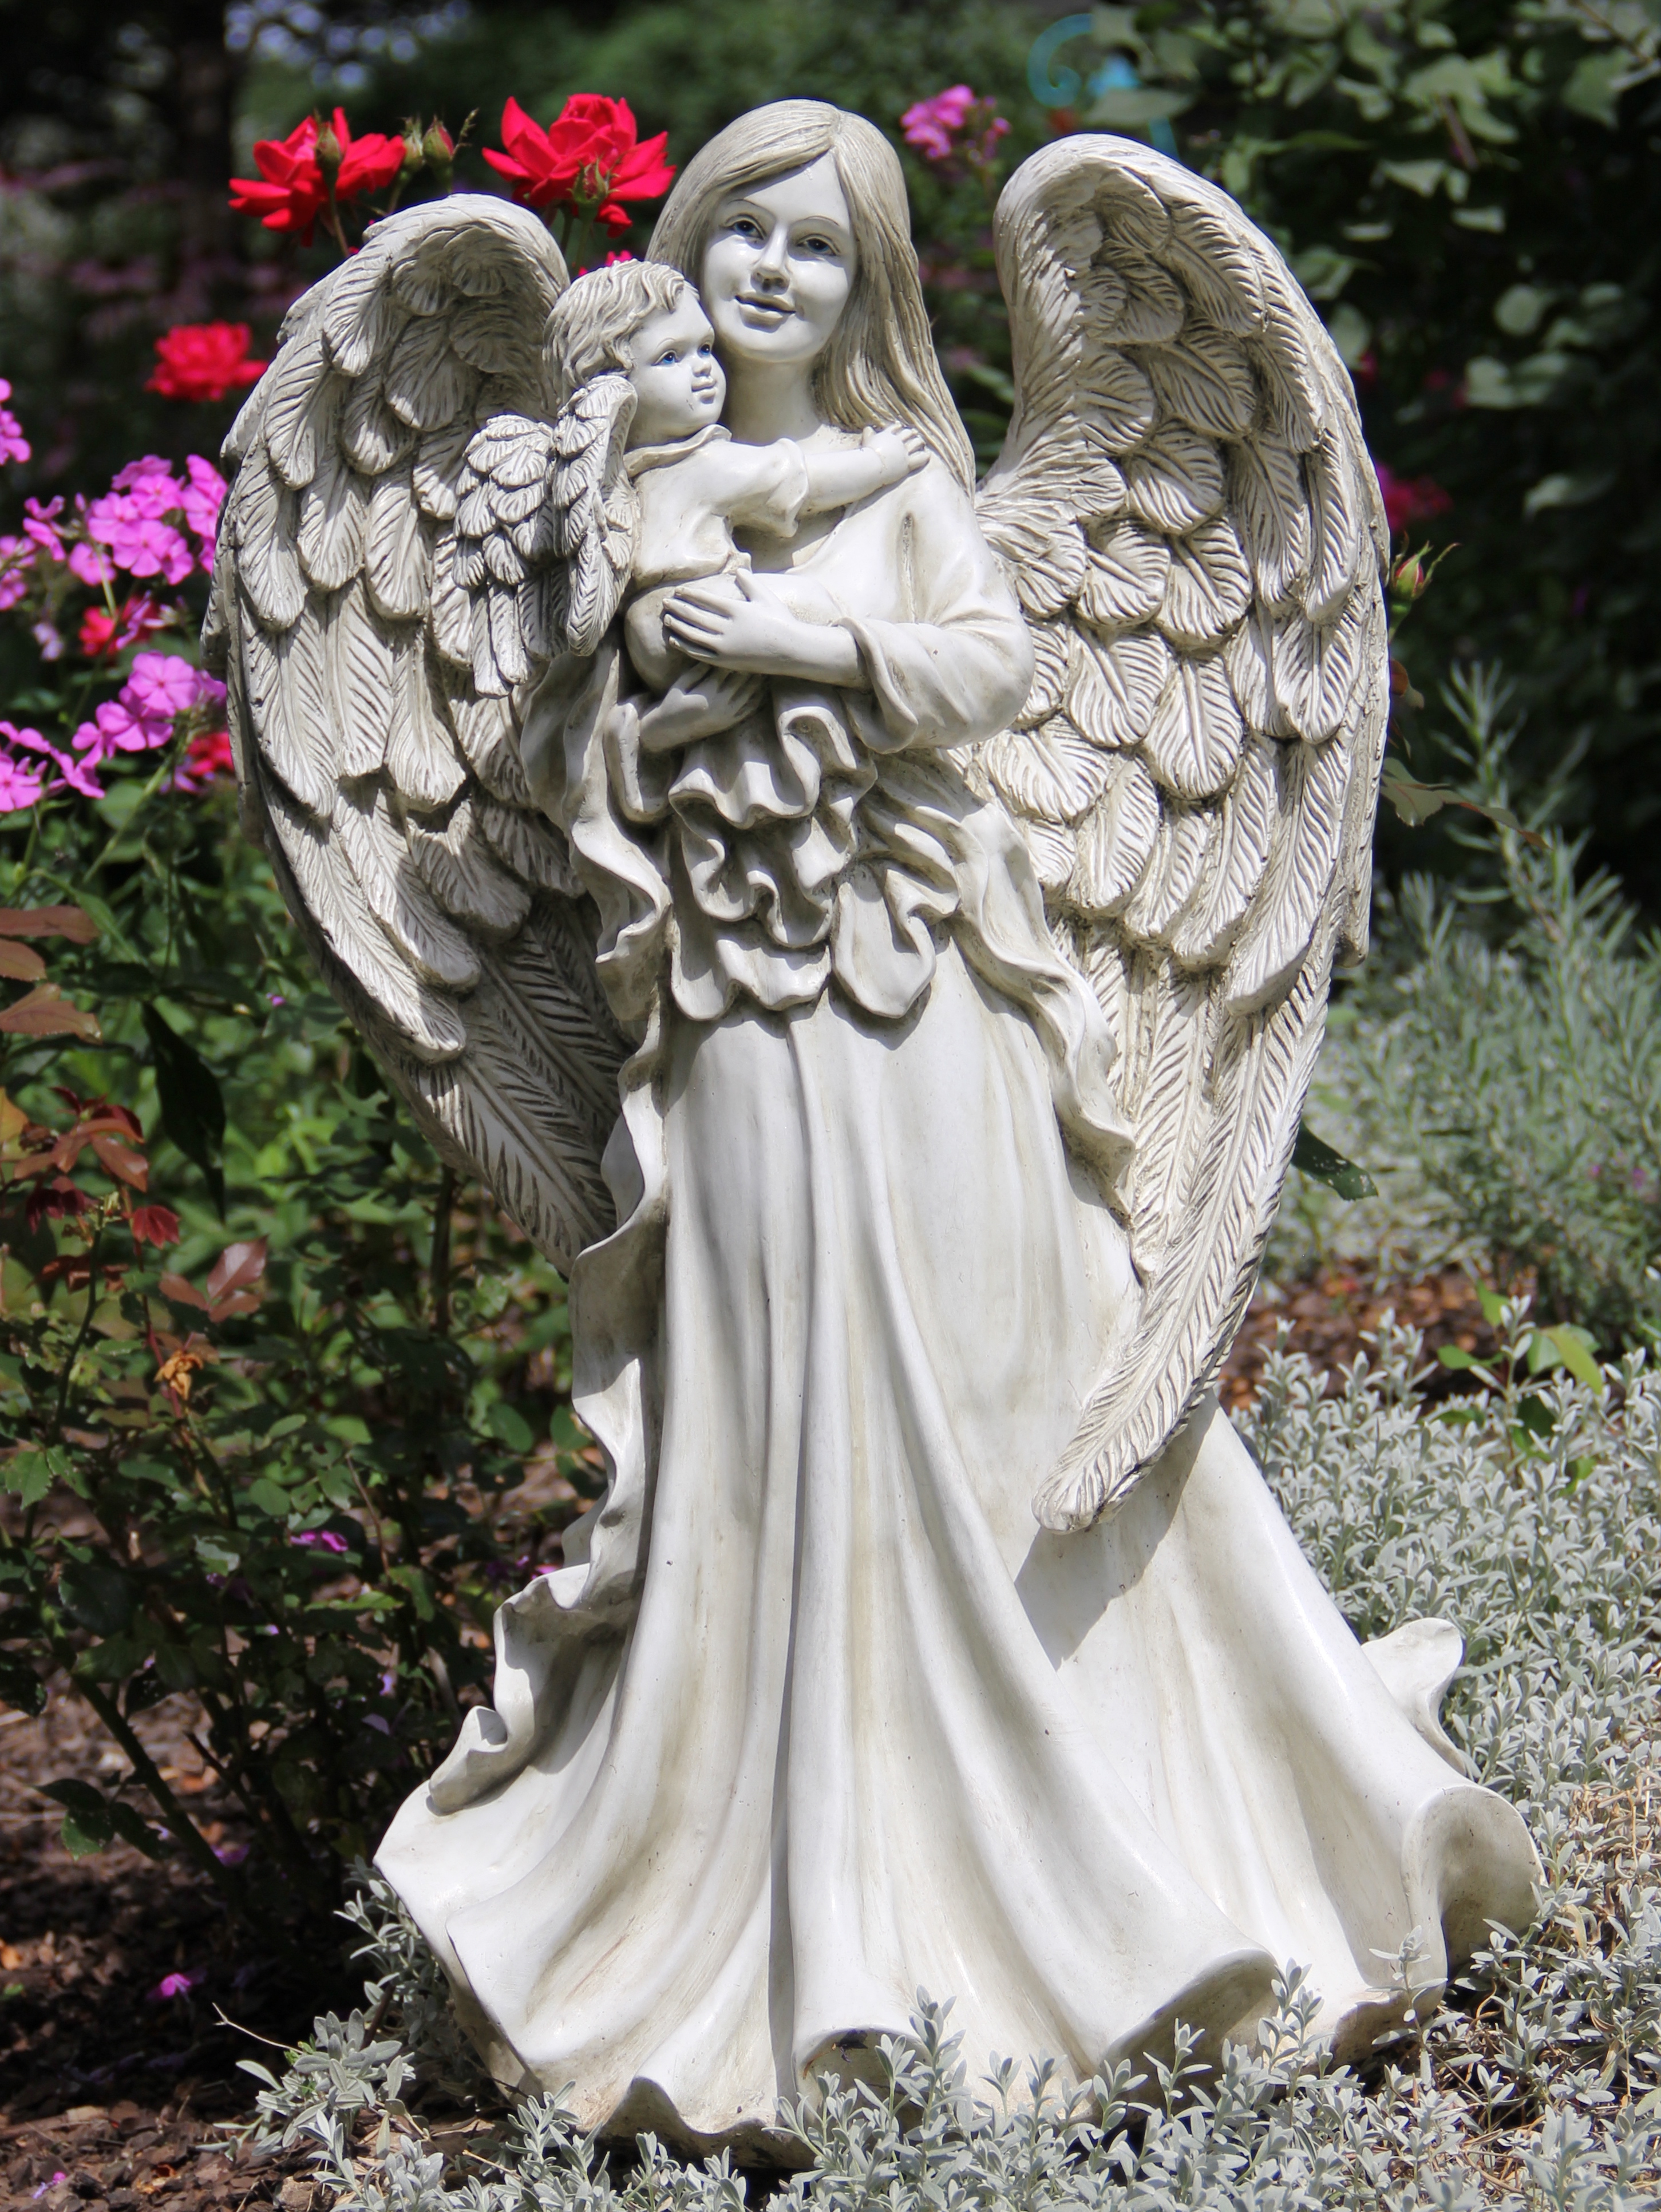 Praying Cherub Garden Statue Baby Angel Outdoor Indoor Yard Garden Decor 